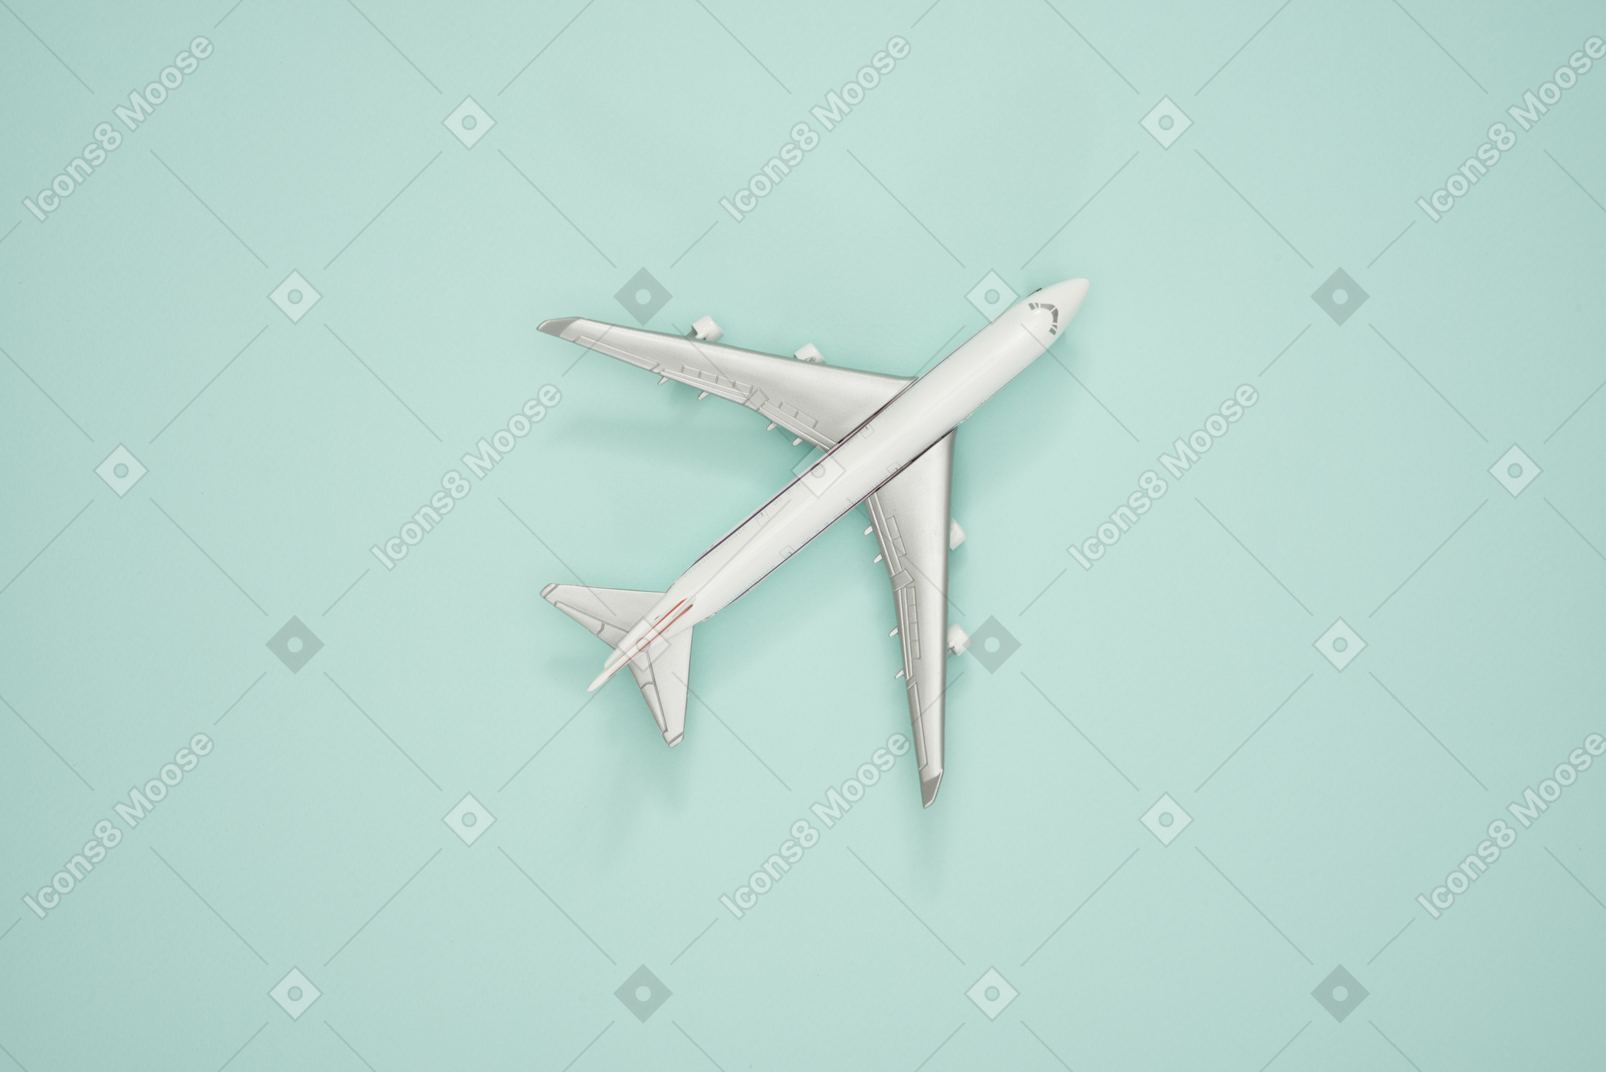 Maqueta de avión sobre un fondo turquesa